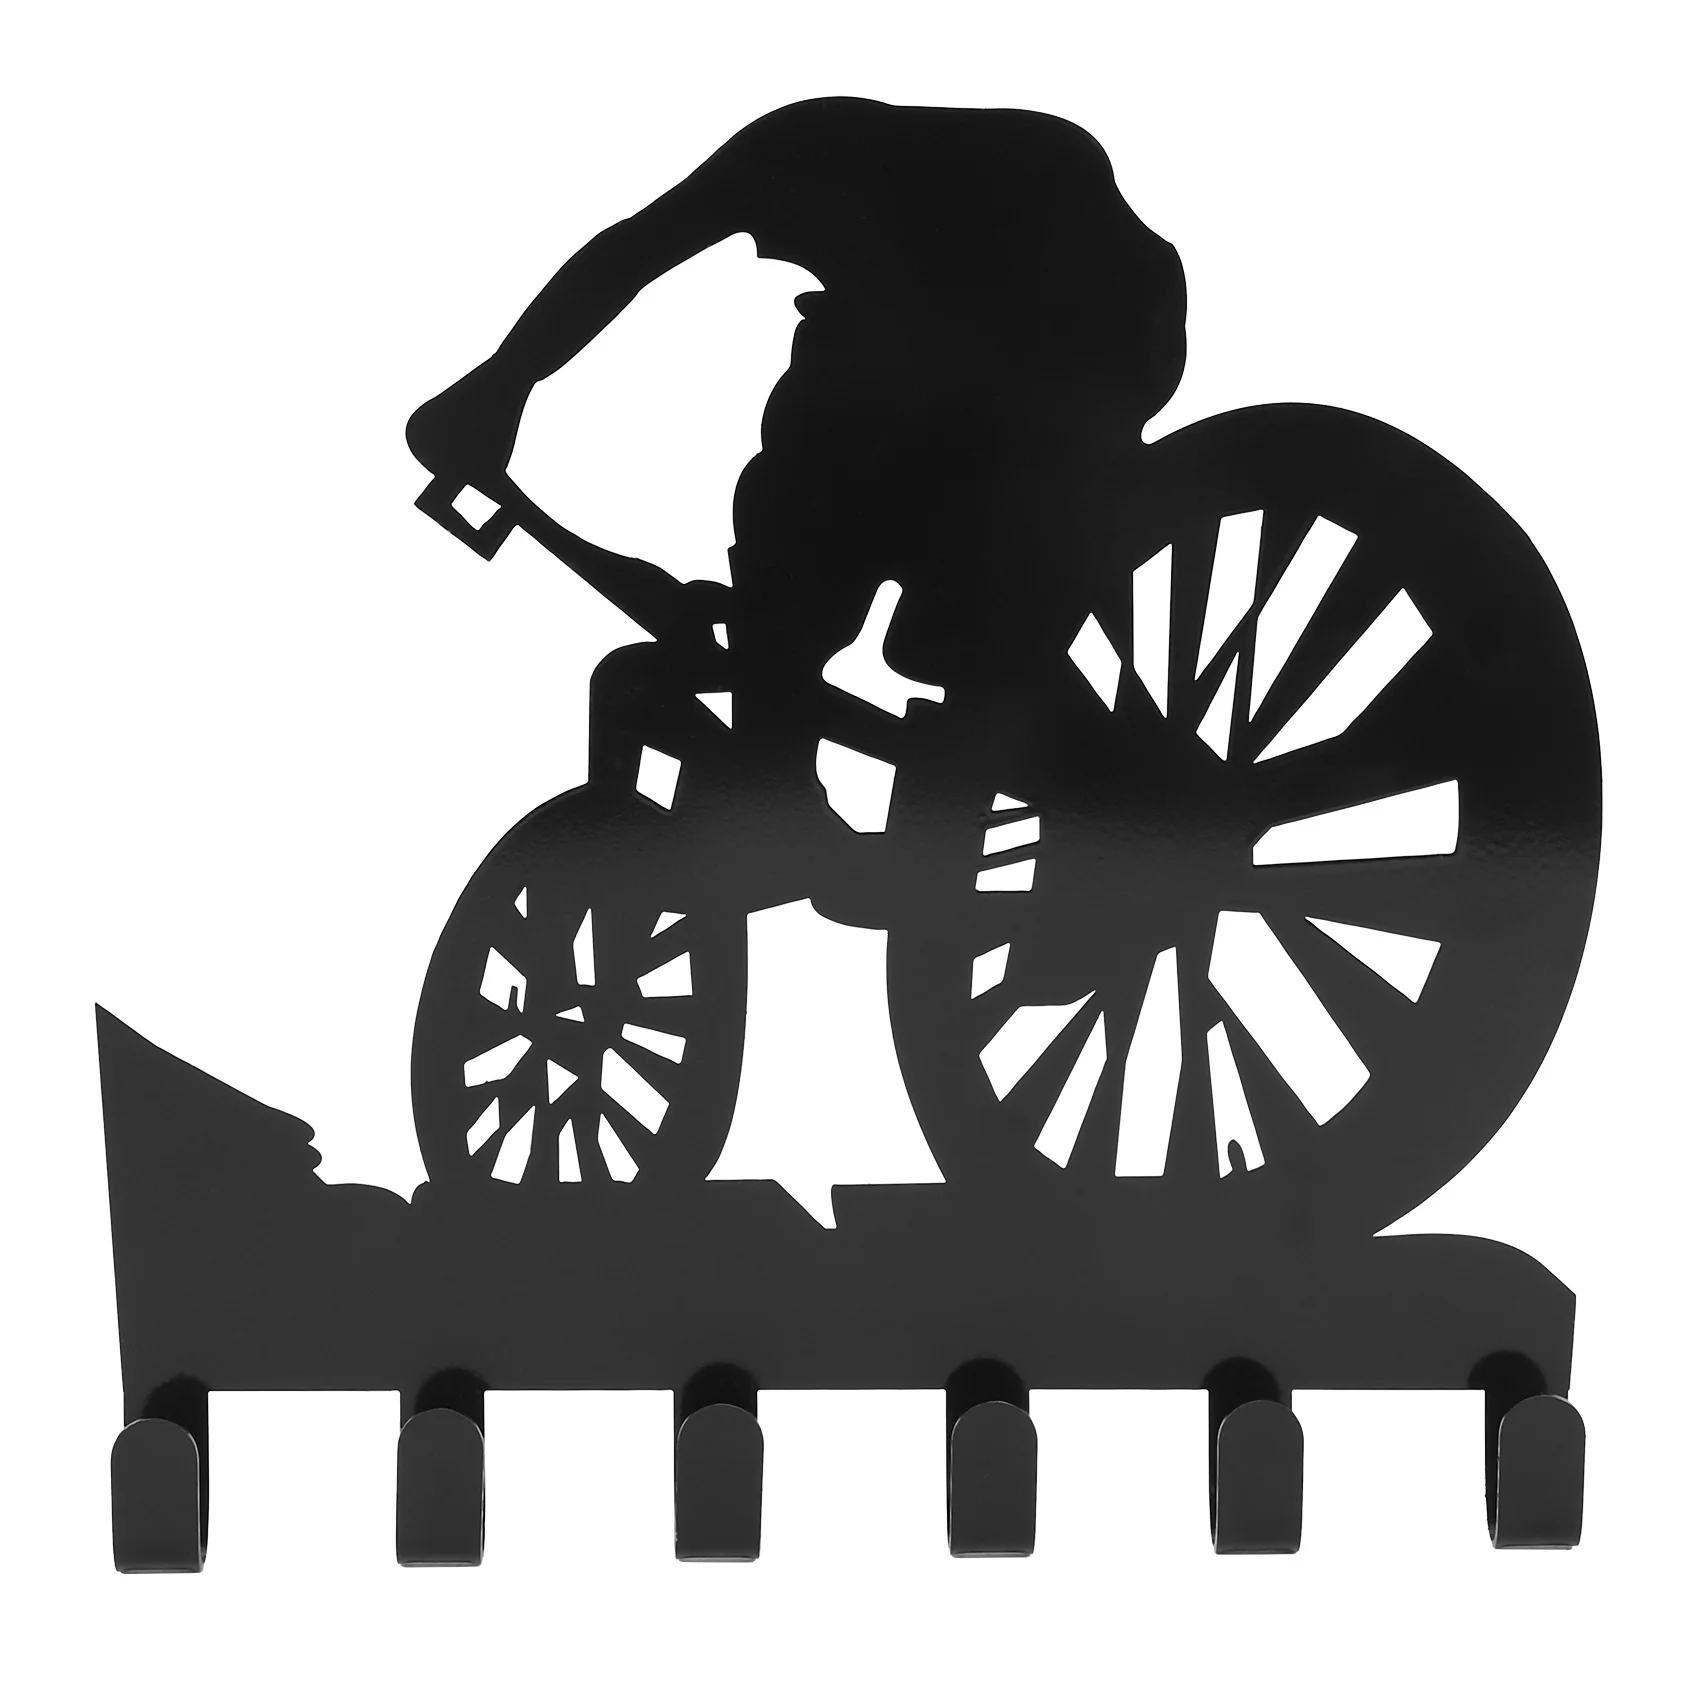 

Стеллаж для снаряжения горного велосипеда, Металлический Настенный декор для горного велосипеда, настенная художественная наклейка с силуэтами, резной черный стеллаж